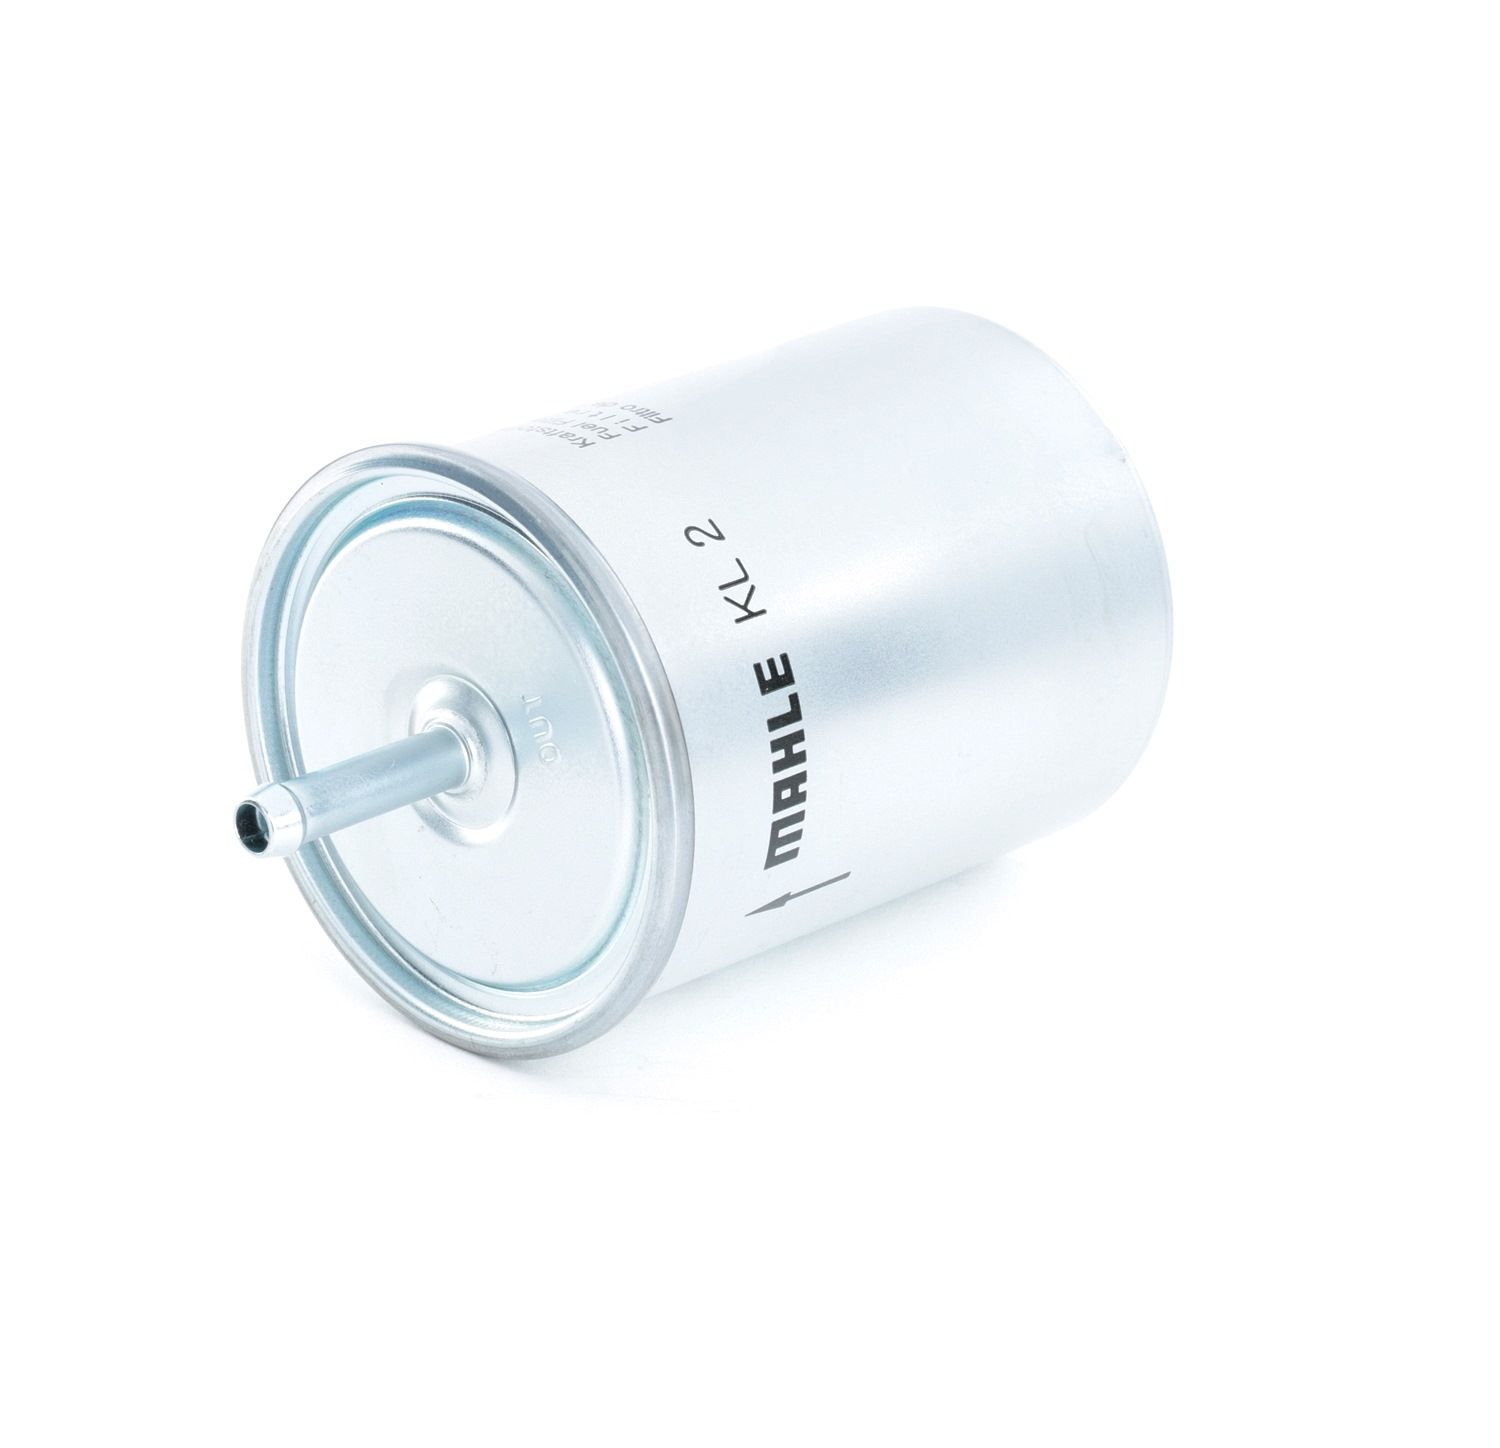 MAHLE ORIGINAL KL 2 Palivový filtr Filtr zabudovaný do potrubí Subaru v originální kvalitě